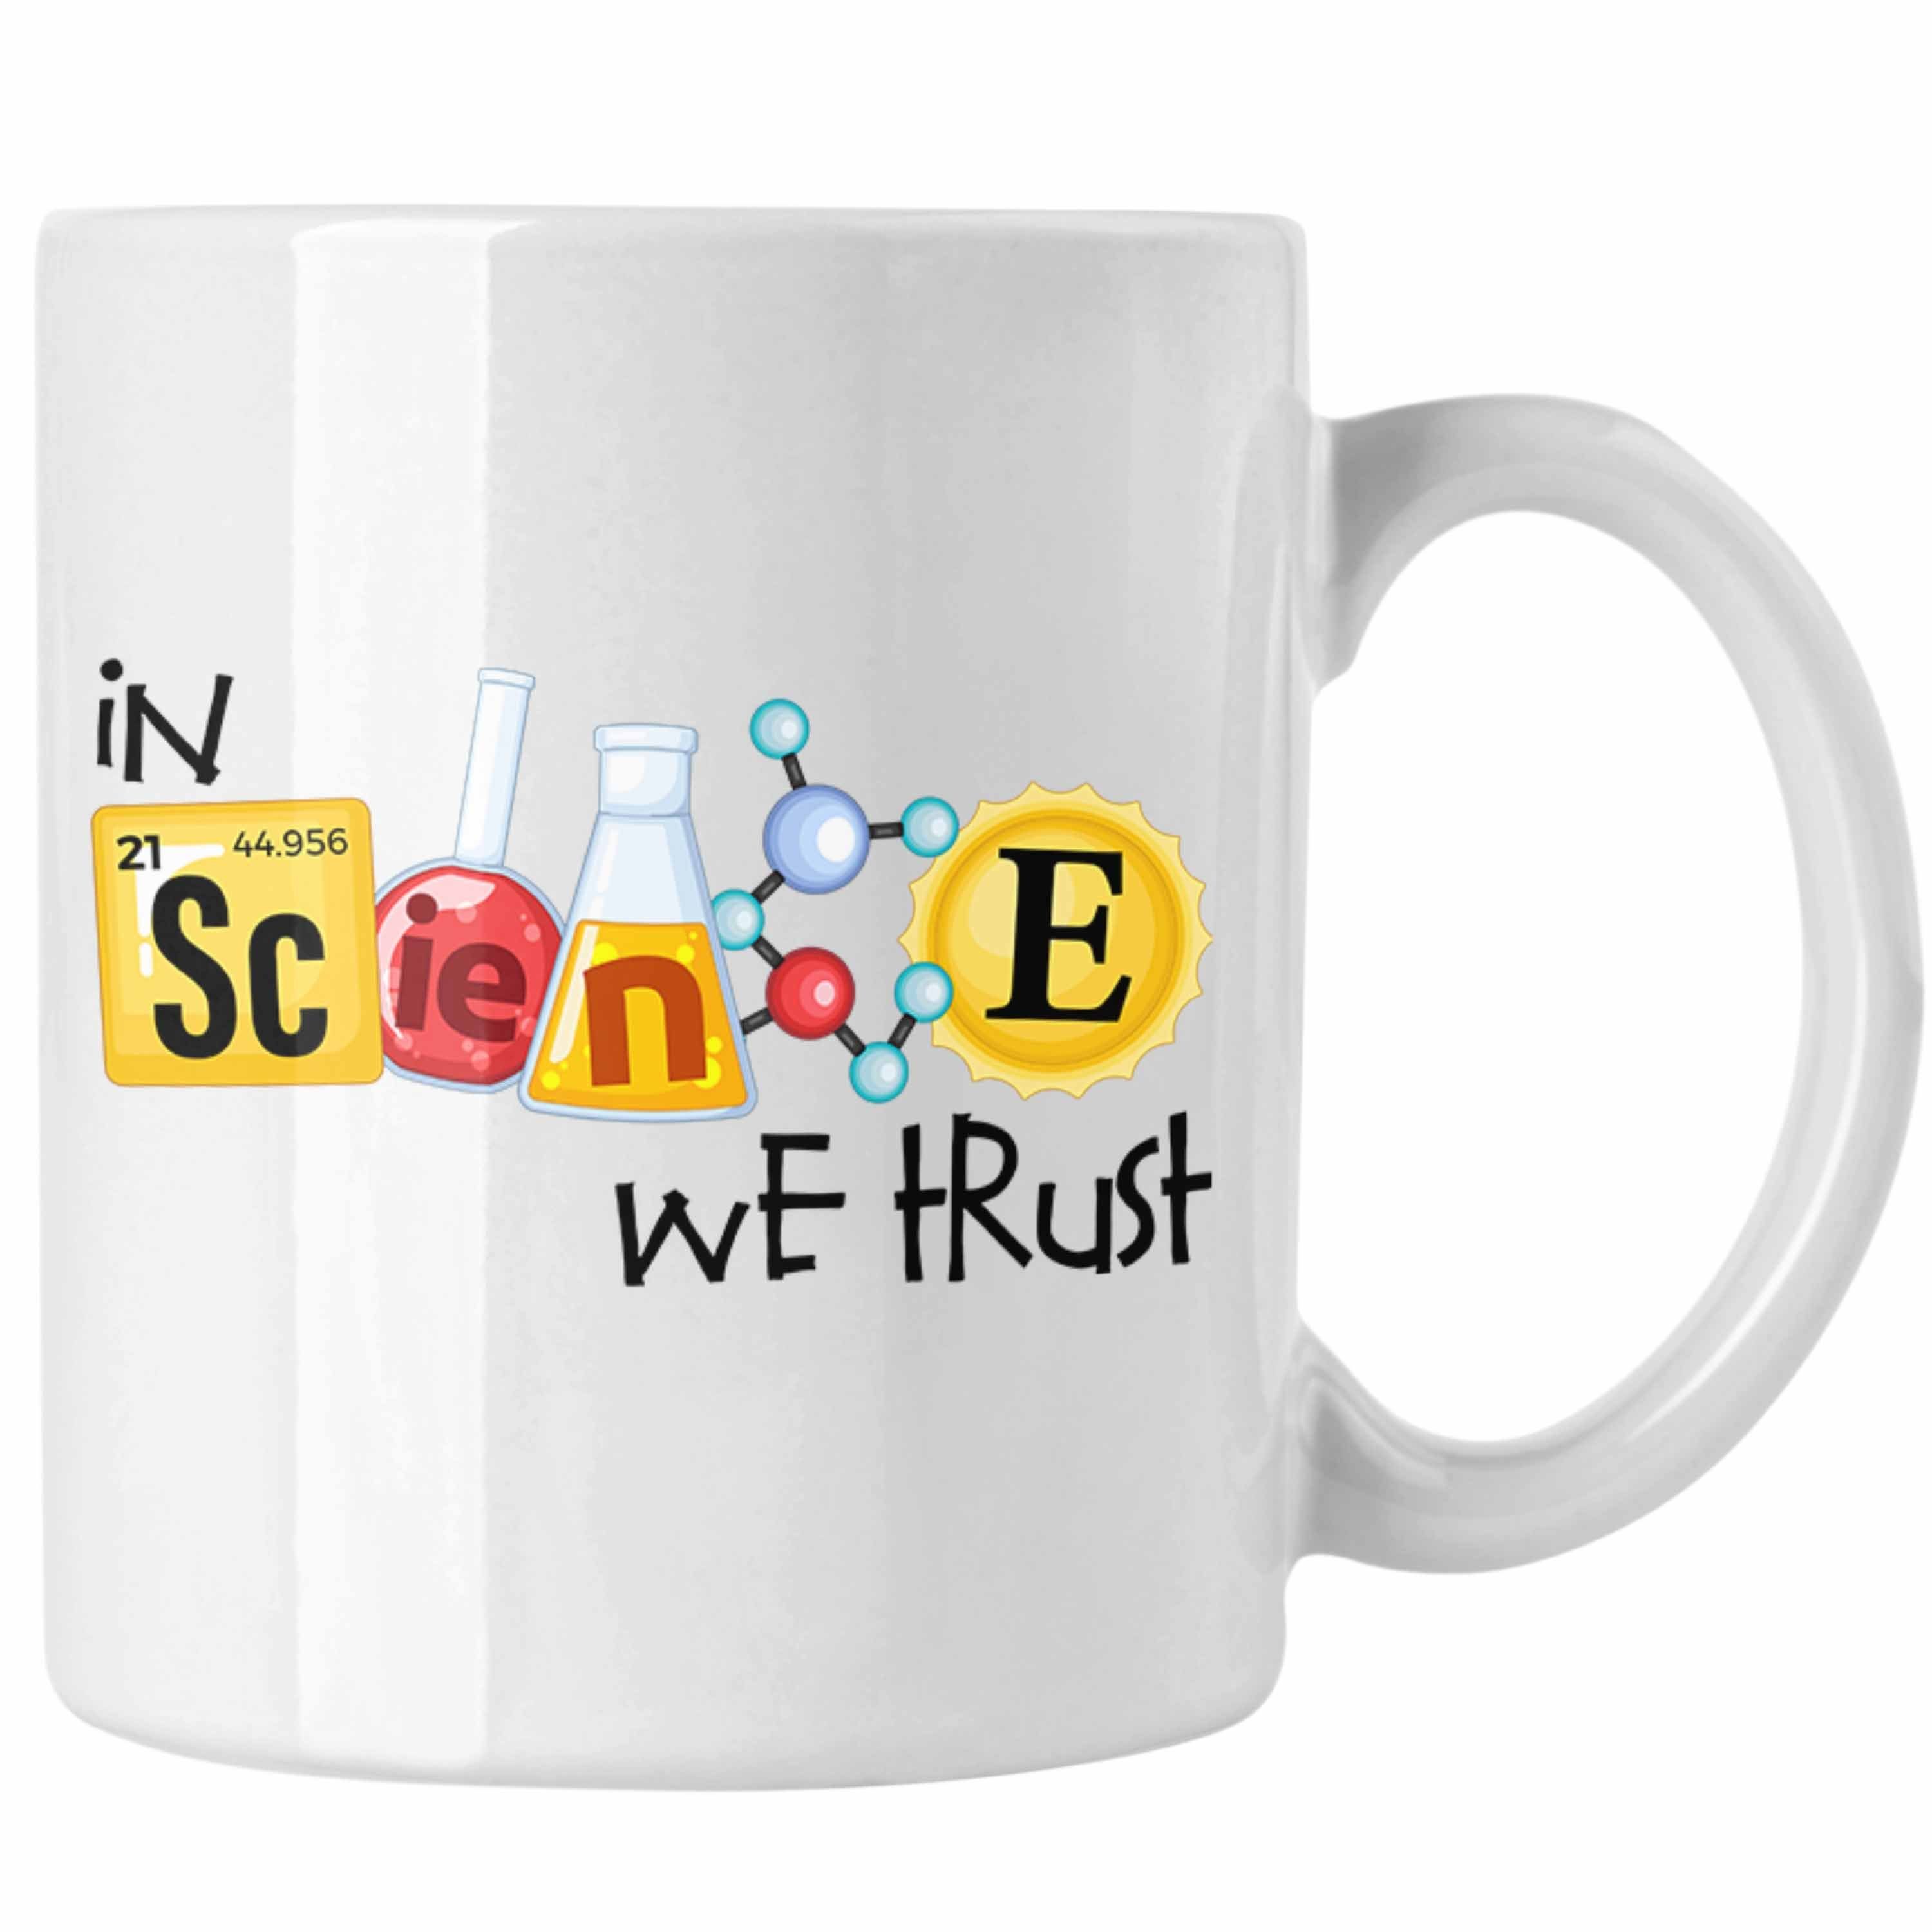 Trendation Tasse Physiker Tasse "In für Science Wissenschaftler Weiss Trust" Geschenk We